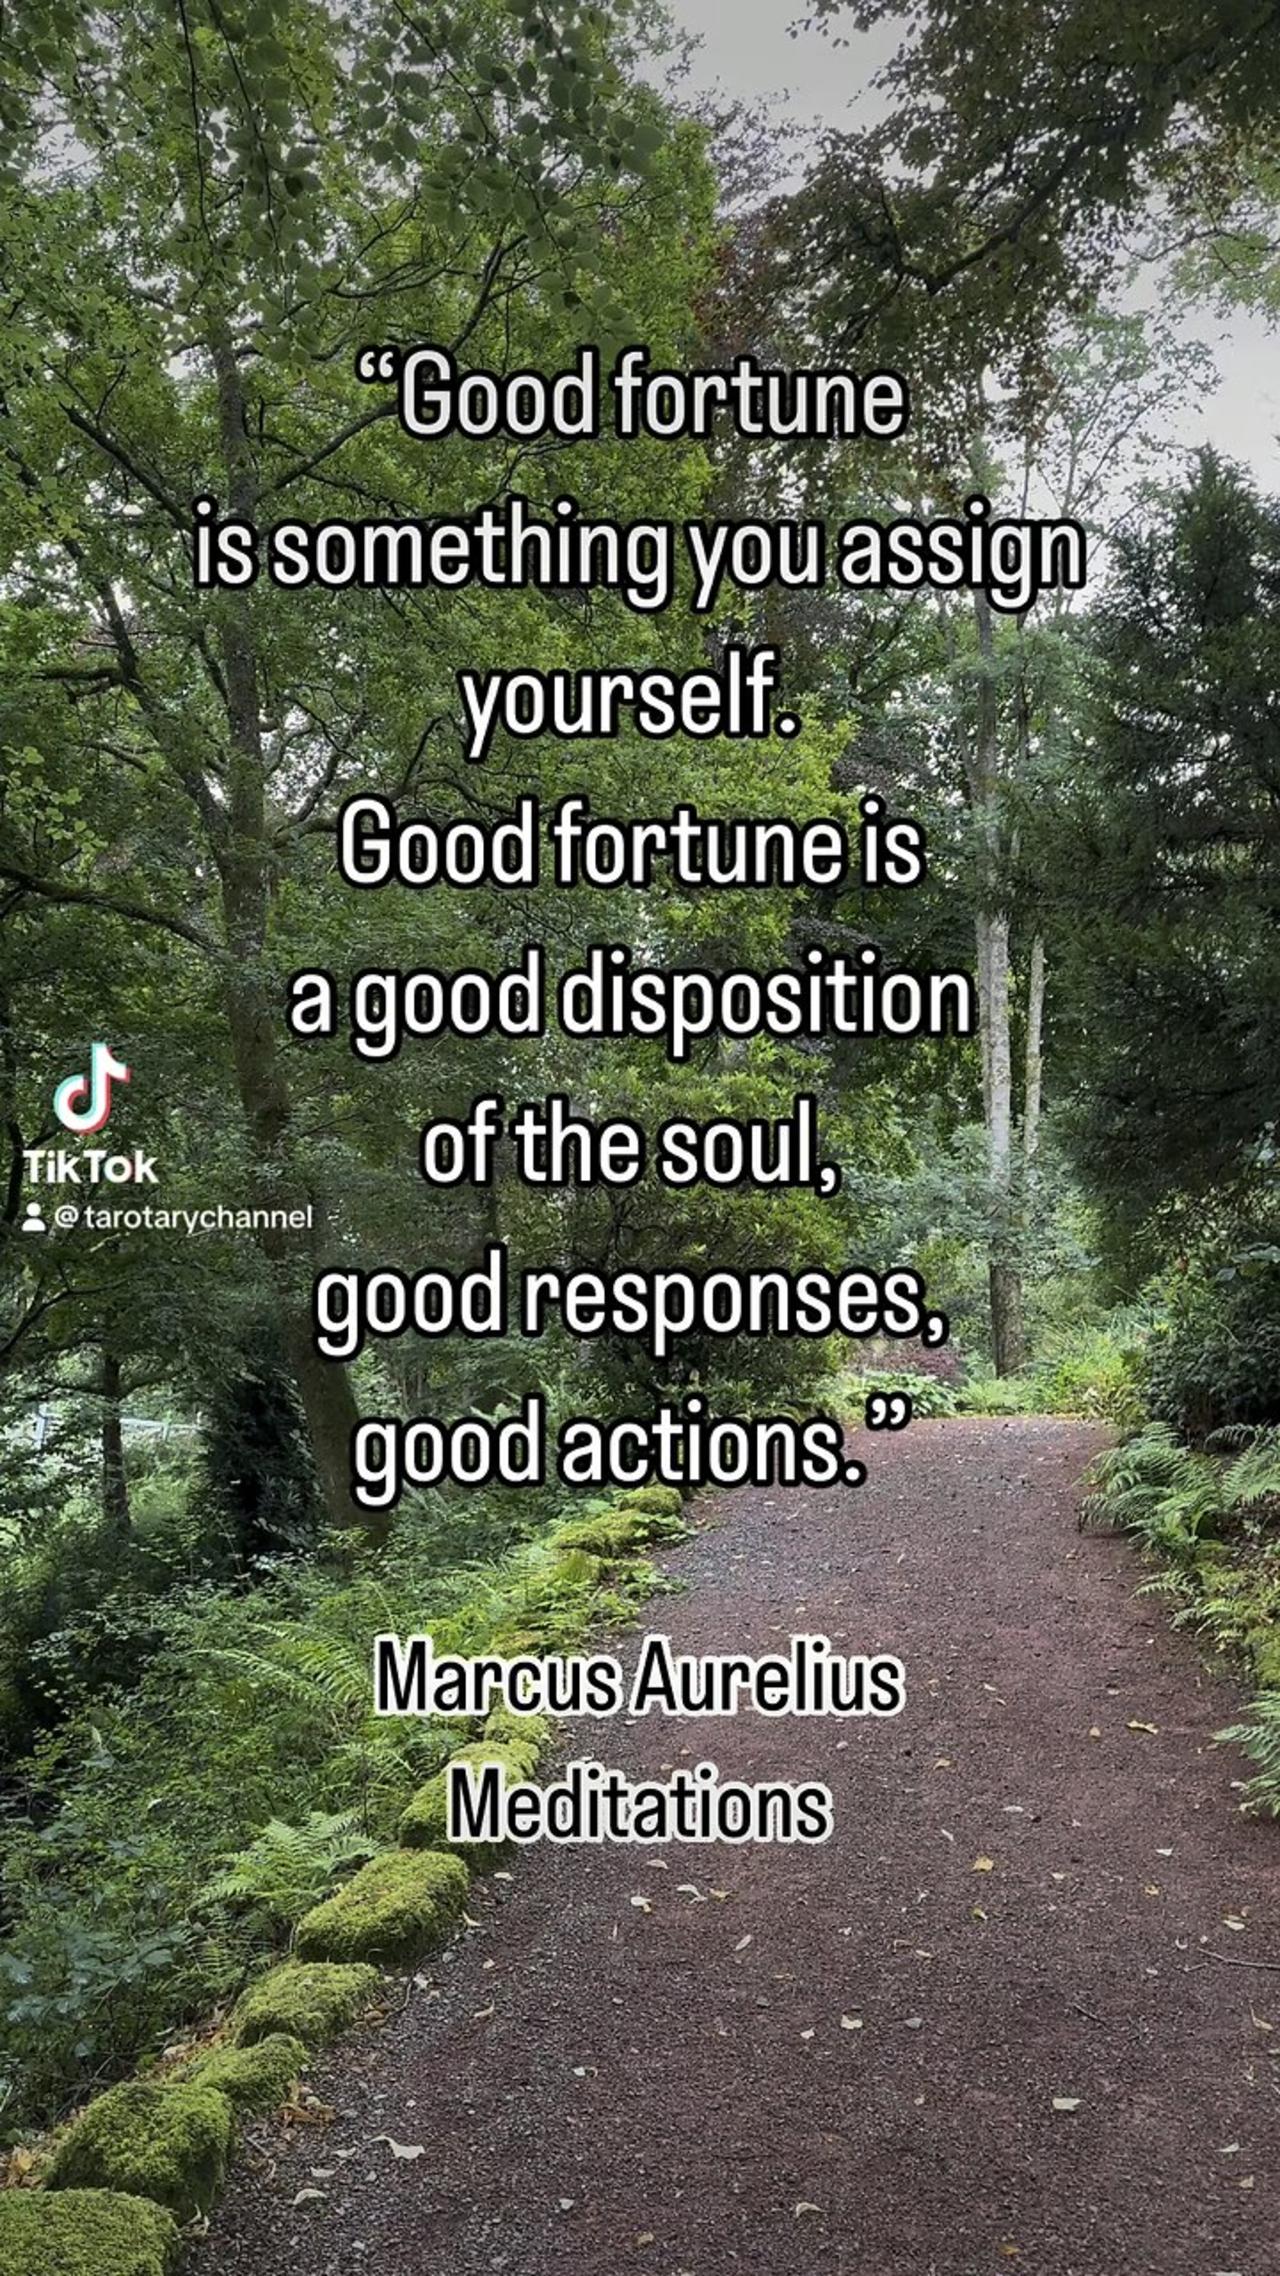 Good fortune-Marcus Aurelius #meditations #marcusaurelius #tarotary #goodfortune #soul #gooddecions